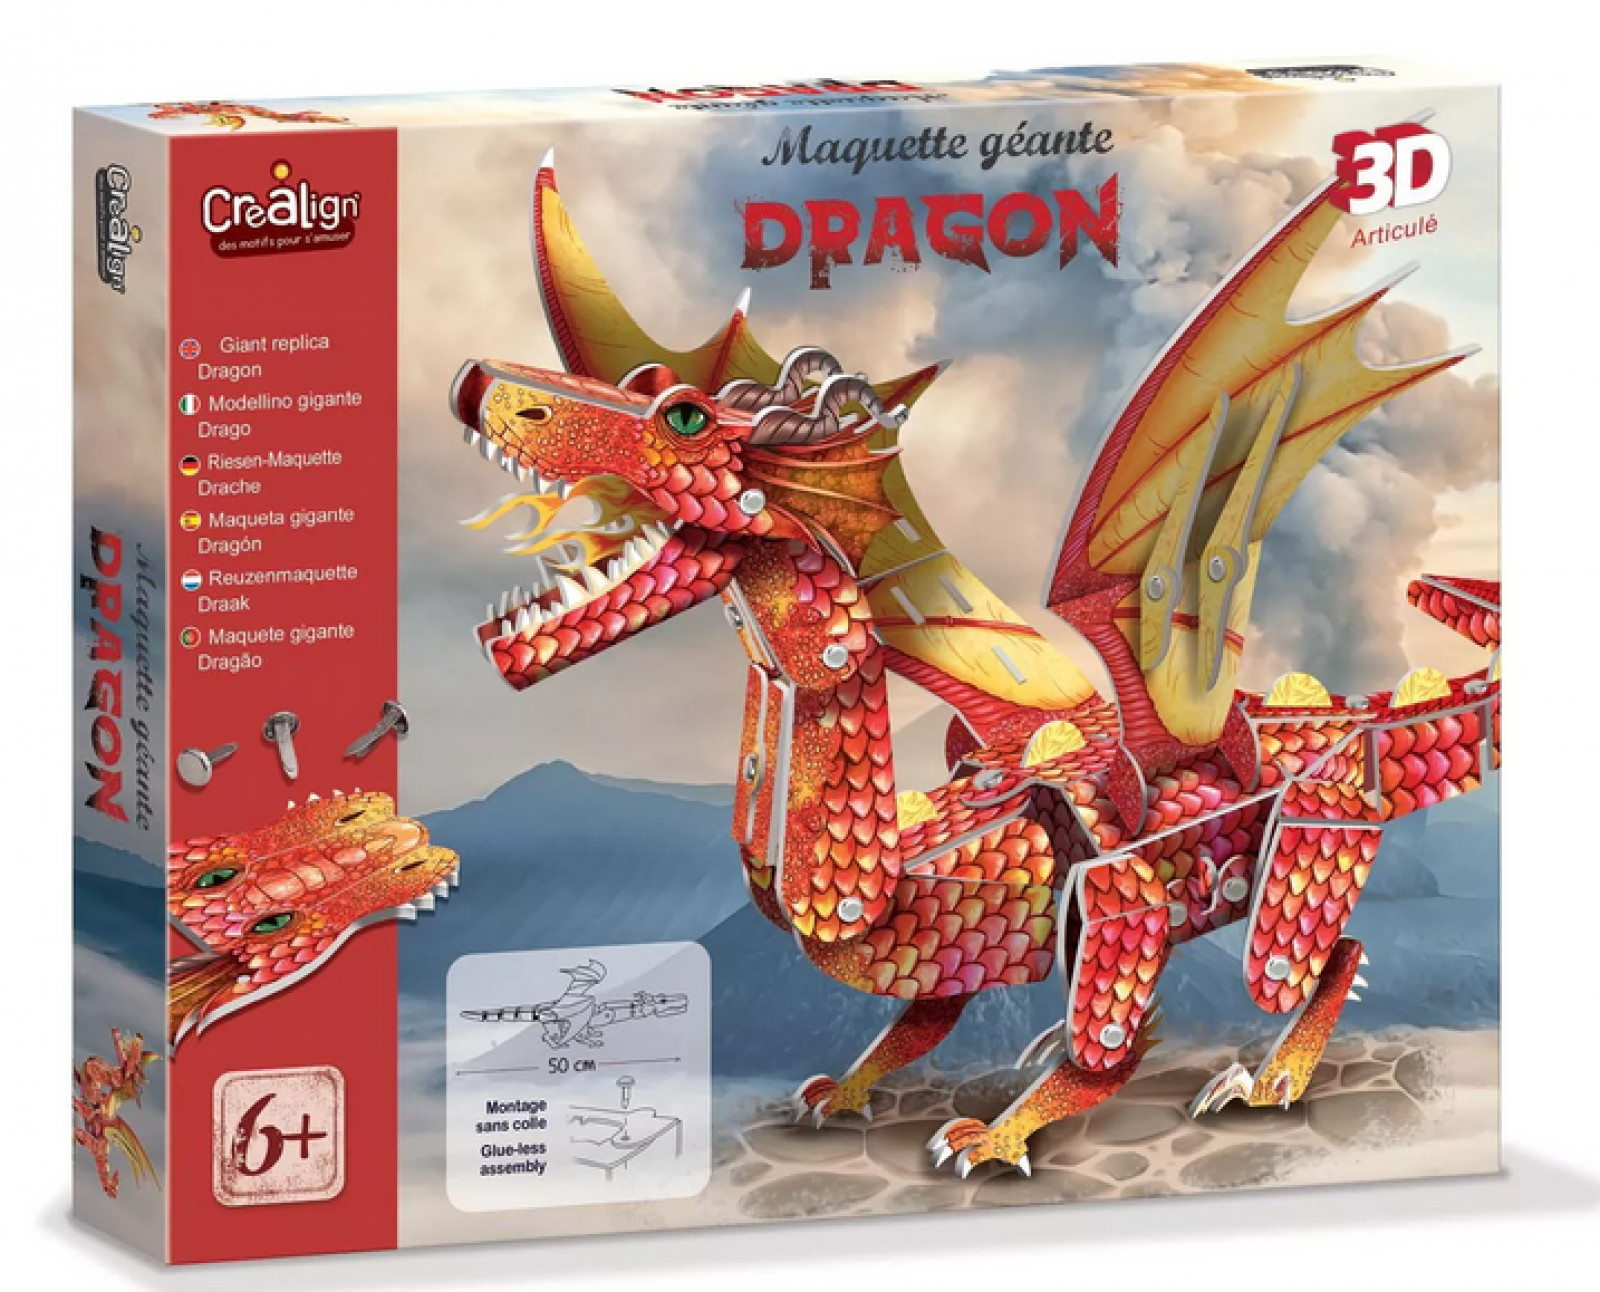 Maquette géante Dragon - Boutique Toup'tibou - photo 6